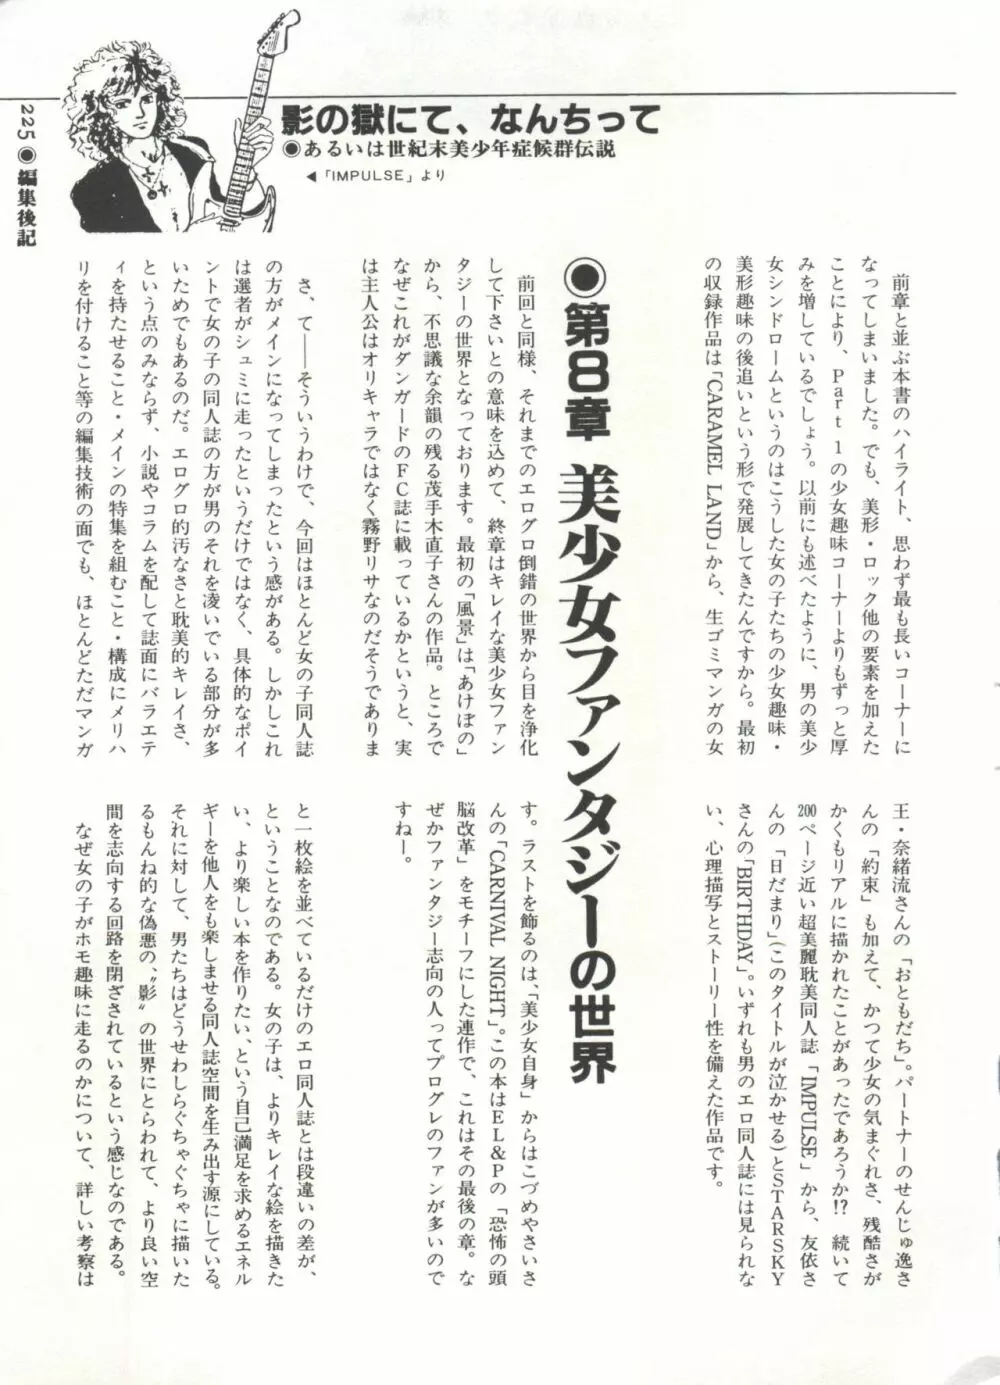 [Anthology] 美少女症候群(2) Lolita syndrome (よろず) 228ページ